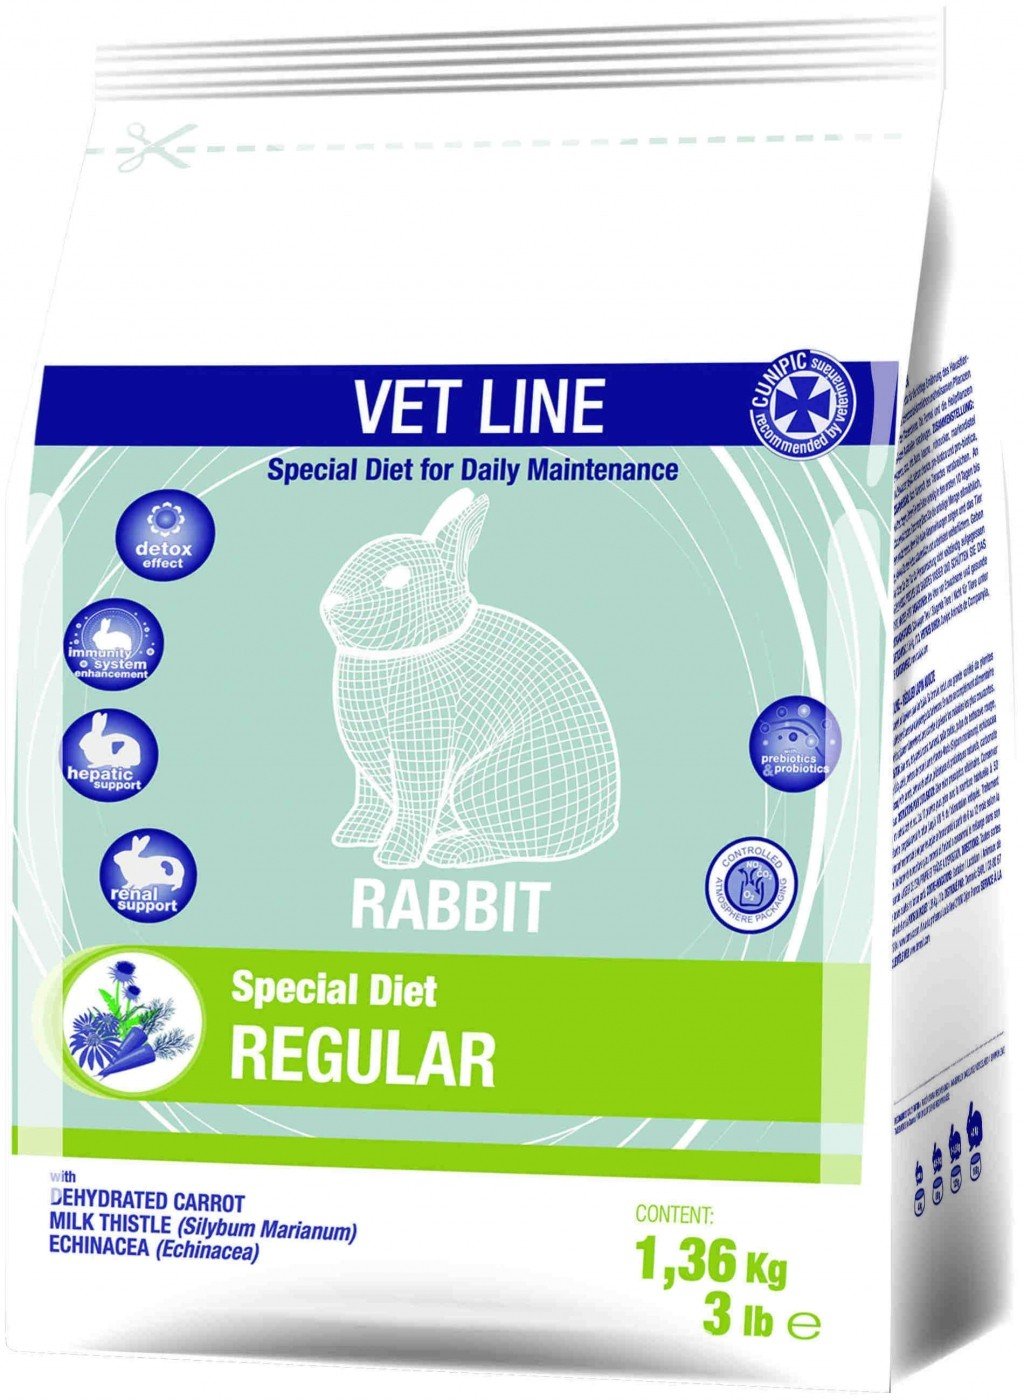 Cunipic Vetline Rabbit Regular Formel für die Gesundheit des Kaninchens